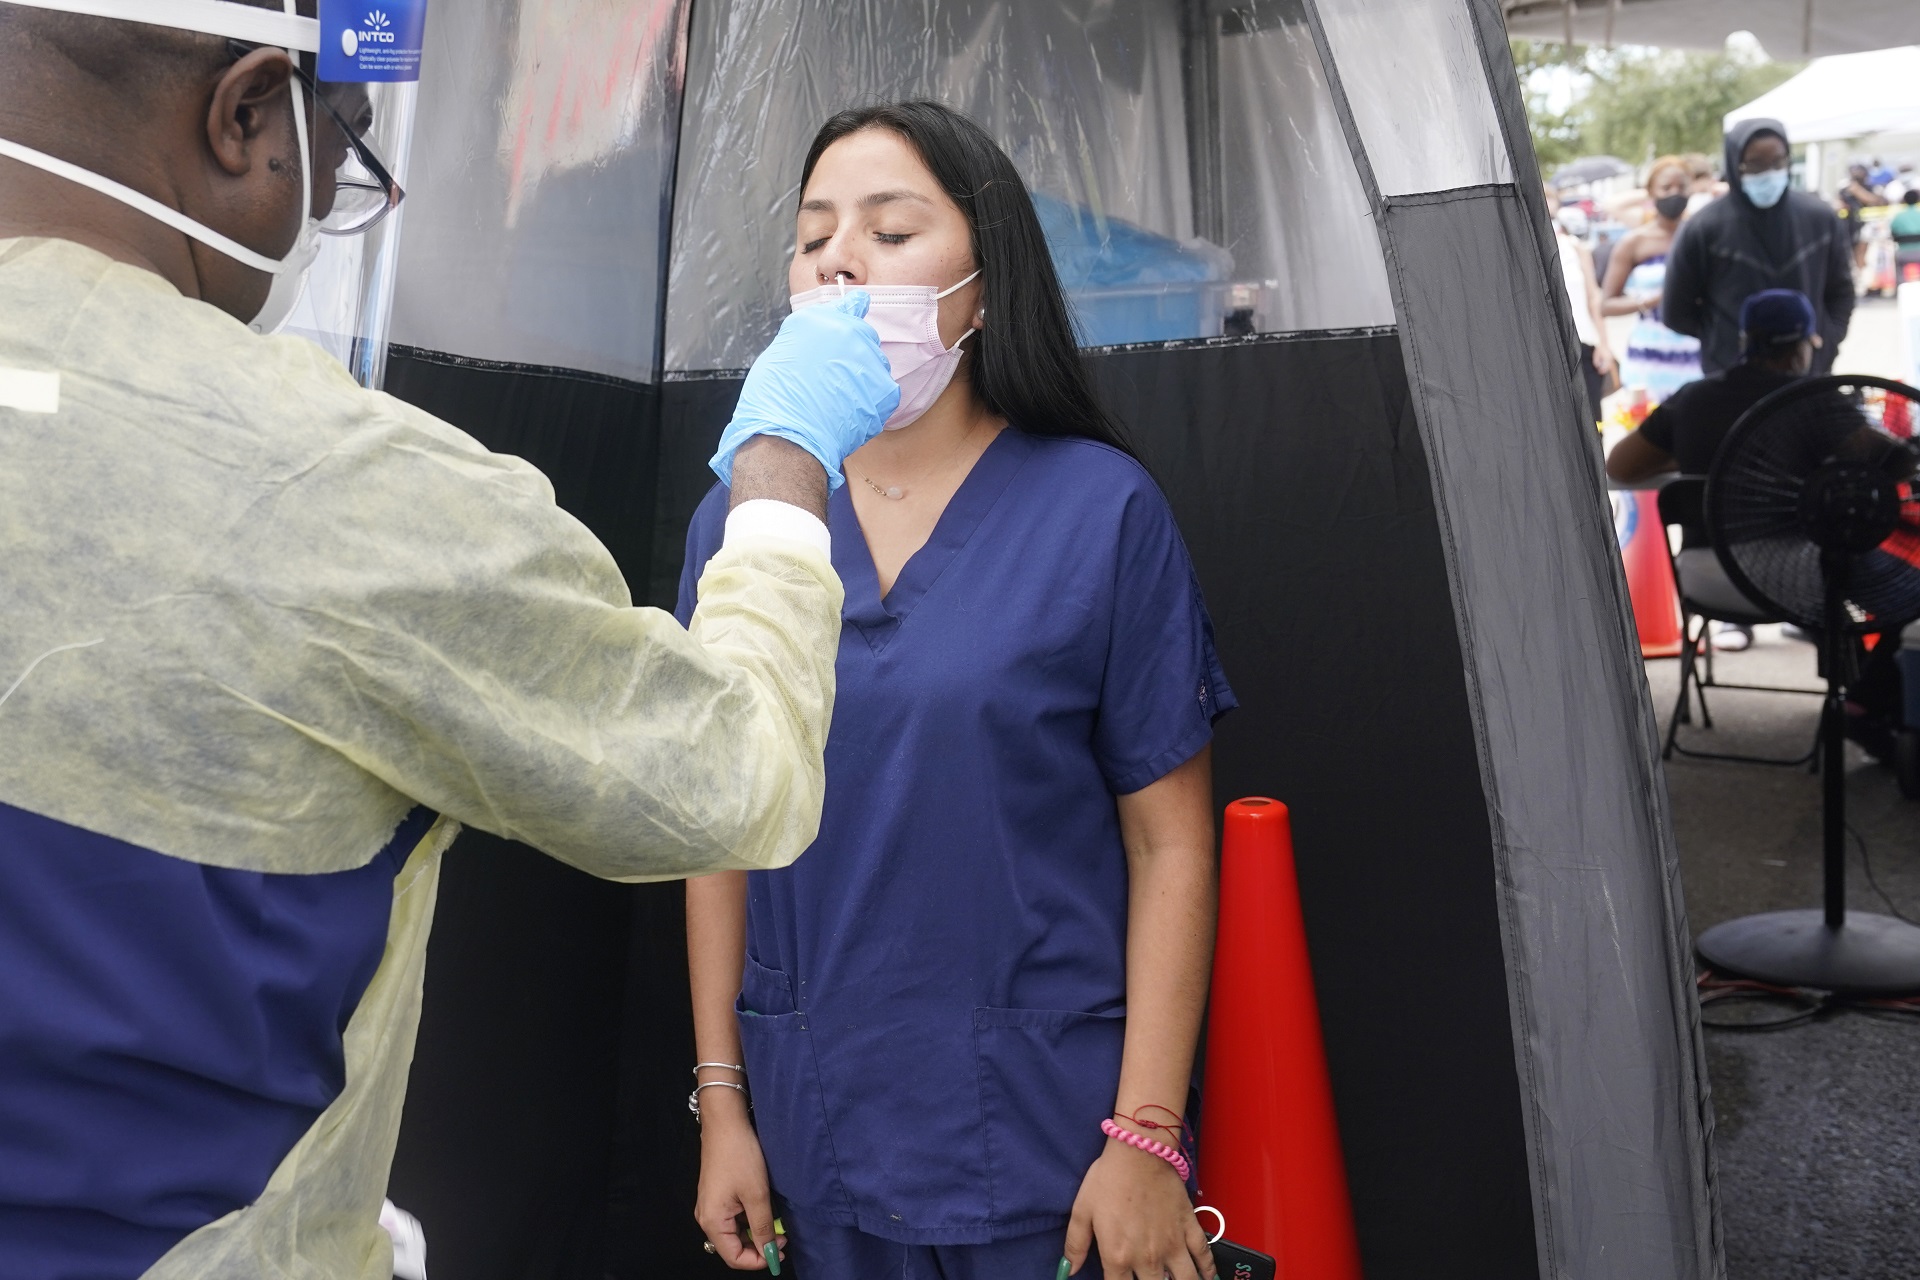 La variante Delta ha generado el repunte de la pandemia en países como los Estados Unidos desde junio pasado. Afecta principalmente a personas no vacunadas contra el COVID-19 (AP Photo/Marta Lavandier)